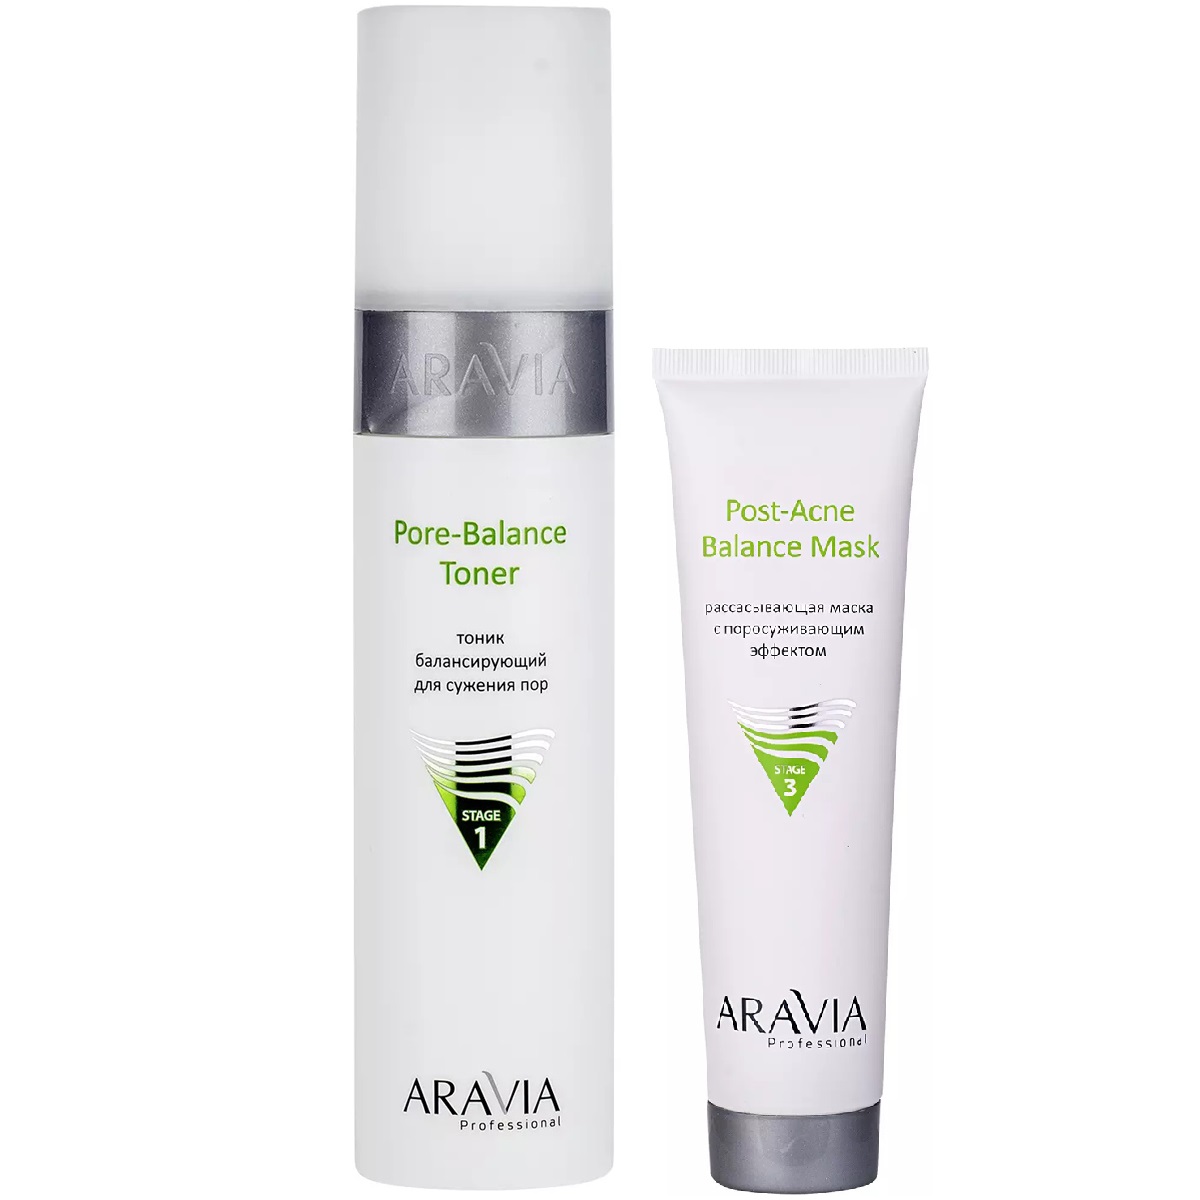 Aravia Professional Набор для проблемной и жирной кожи: маска, 100 мл + тоник, 250 мл (Aravia Professional, Уход за лицом) stop acne mask маска поросуживающая для жирной и комбинированной кожи